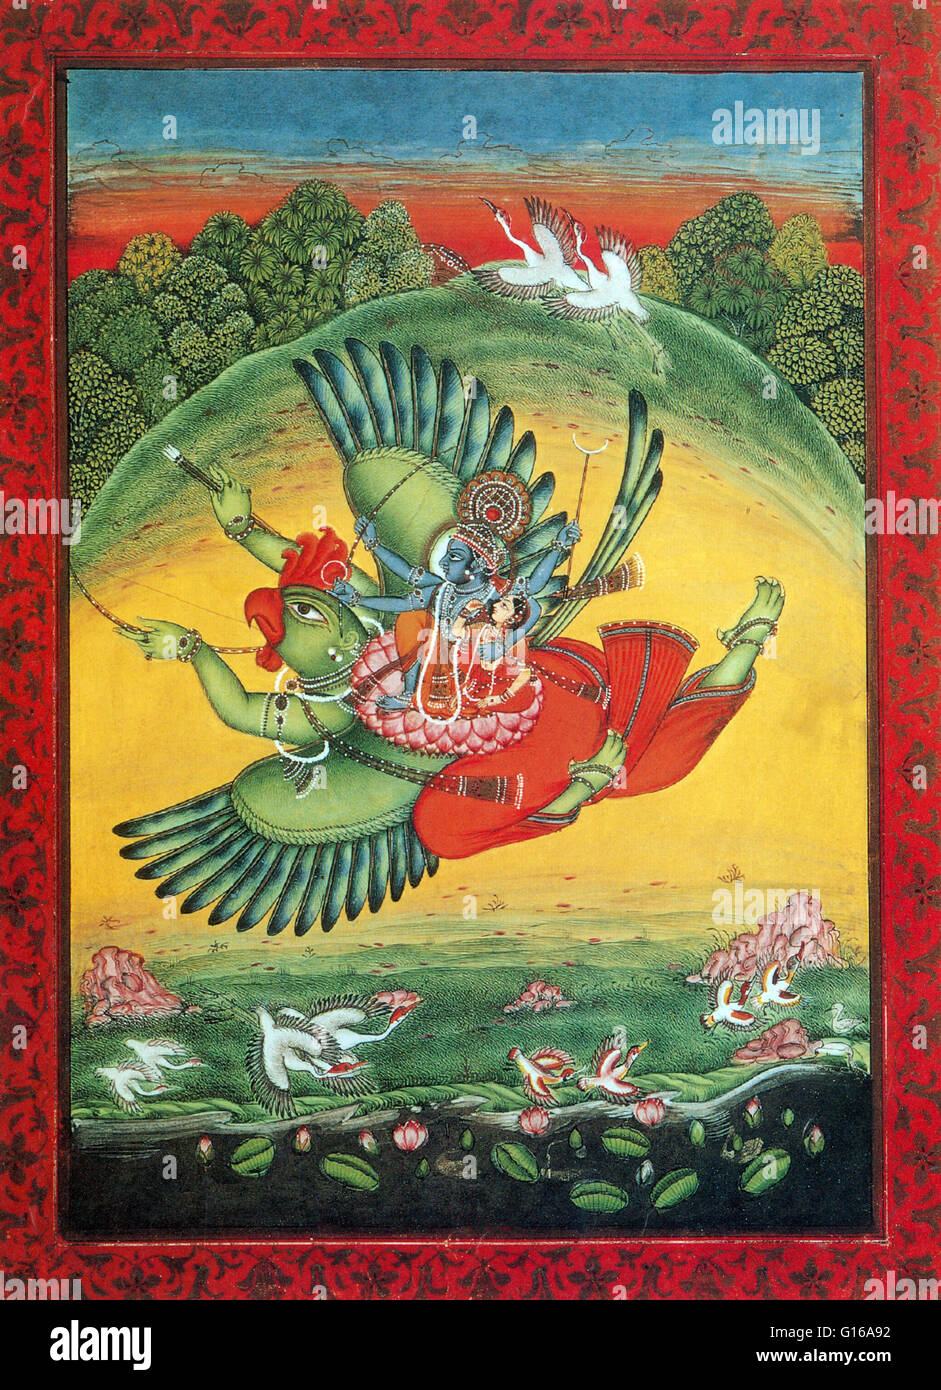 Der Garuda ist ein großen mythischen Vogel oder Vogel-wie Geschöpf, das in der hinduistischen und buddhistischen Mythologie erscheint. Garuda ist eines der drei wichtigsten tierischen Gottheiten in der hinduistischen Mythologie, die nach der Vedic Periode in der indischen Geschichte entwickelt hat. Die anderen tw Stockfoto